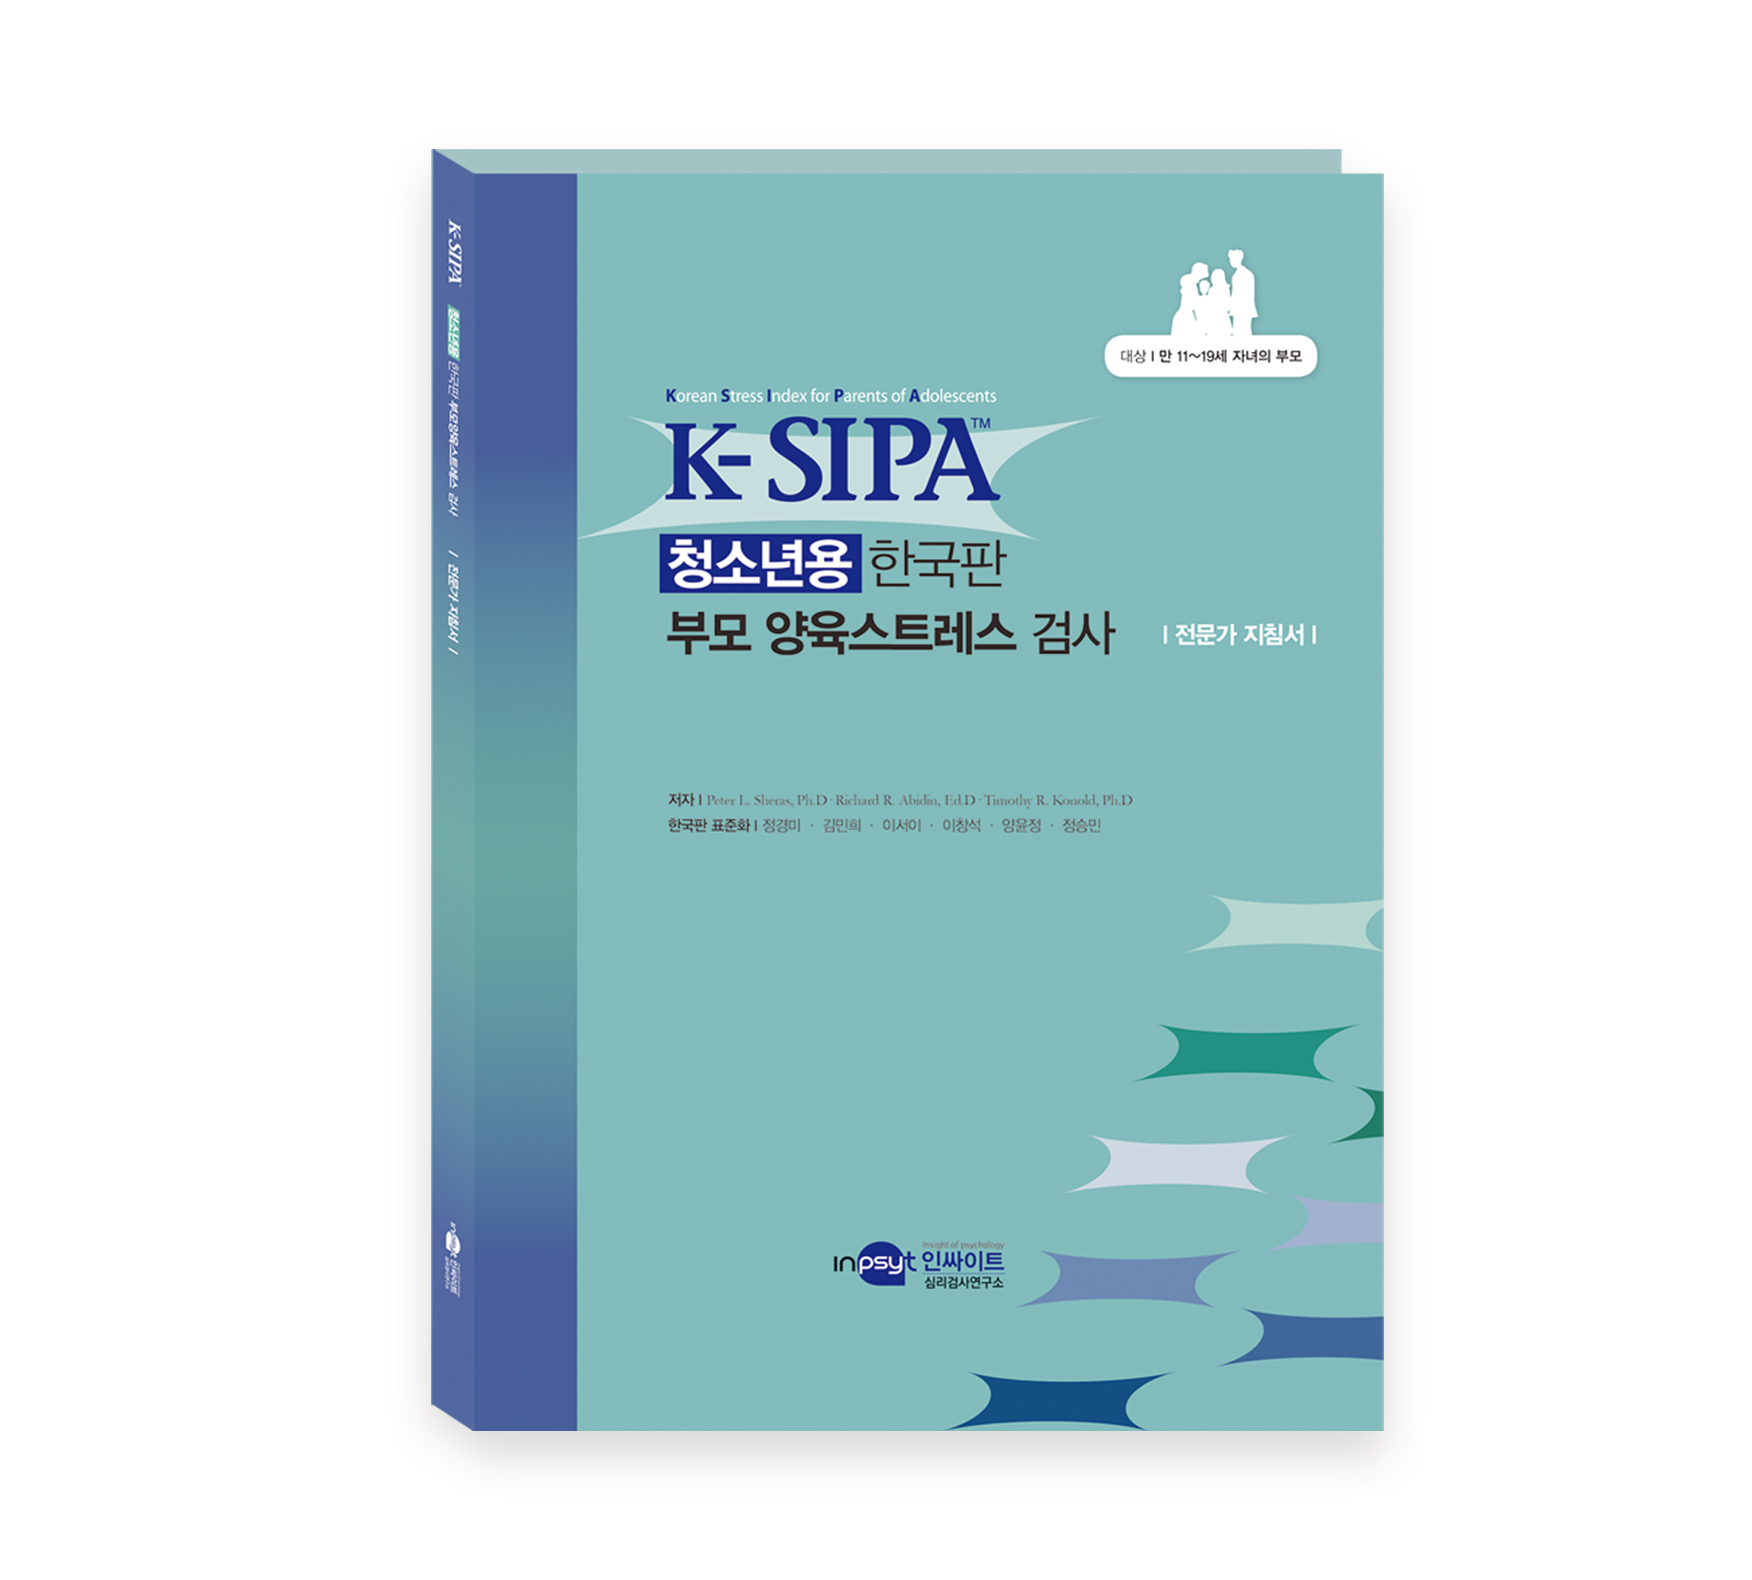 K-SIPA청소년용한국판부모양육스트레스검사[웹용]-지침서.jpg